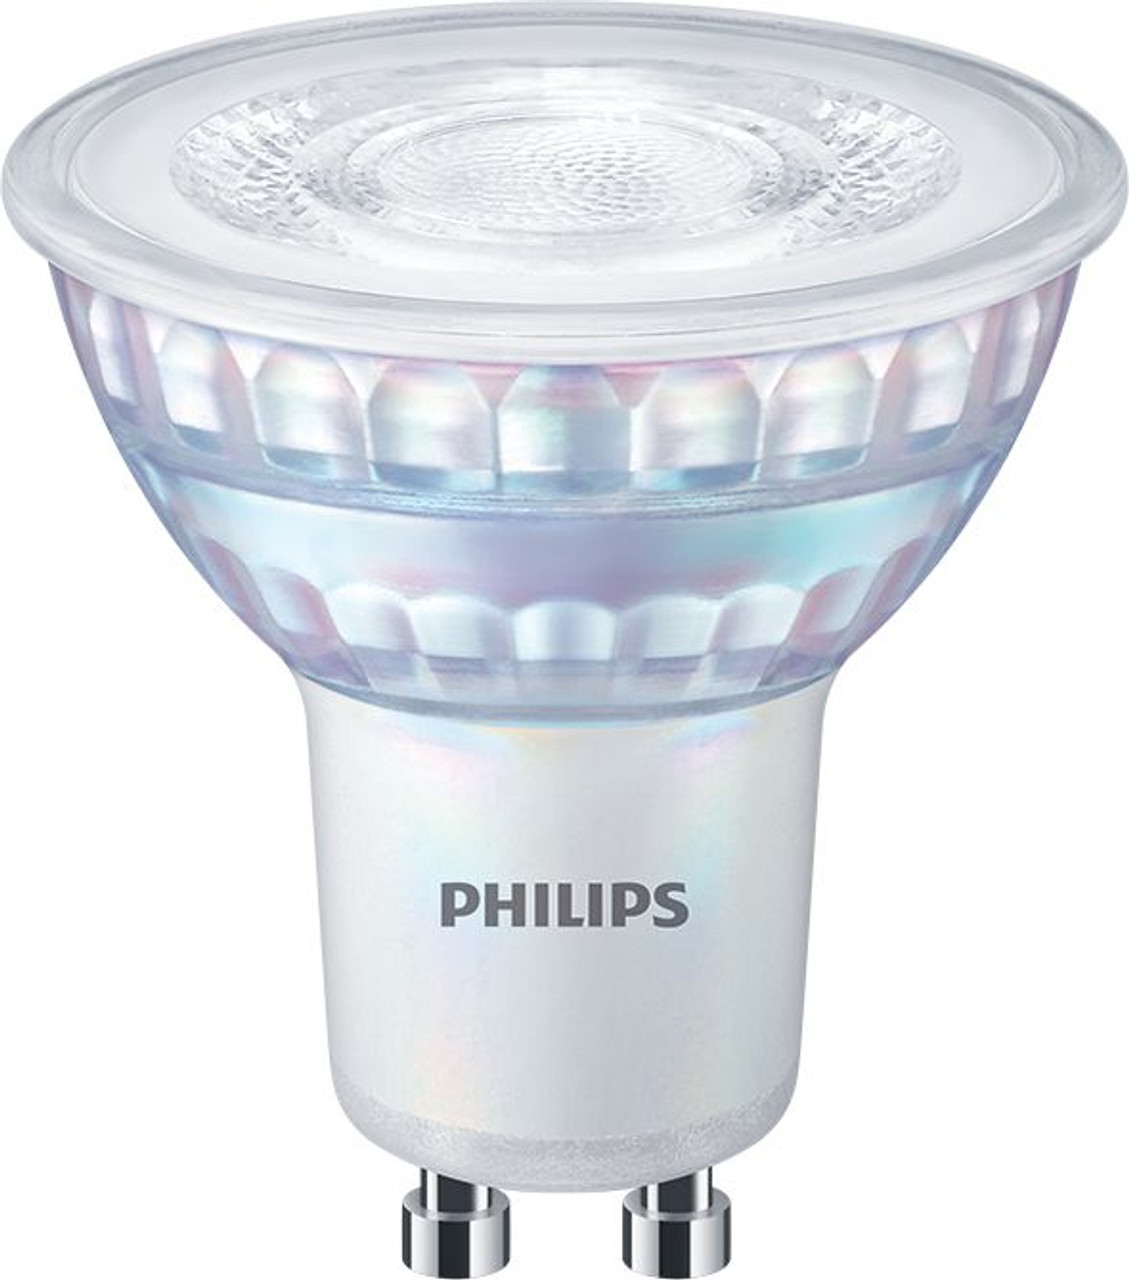 Philips Lighting LEDCLA 100W GU10 230V 60D ND 1PF/12 LED Spots